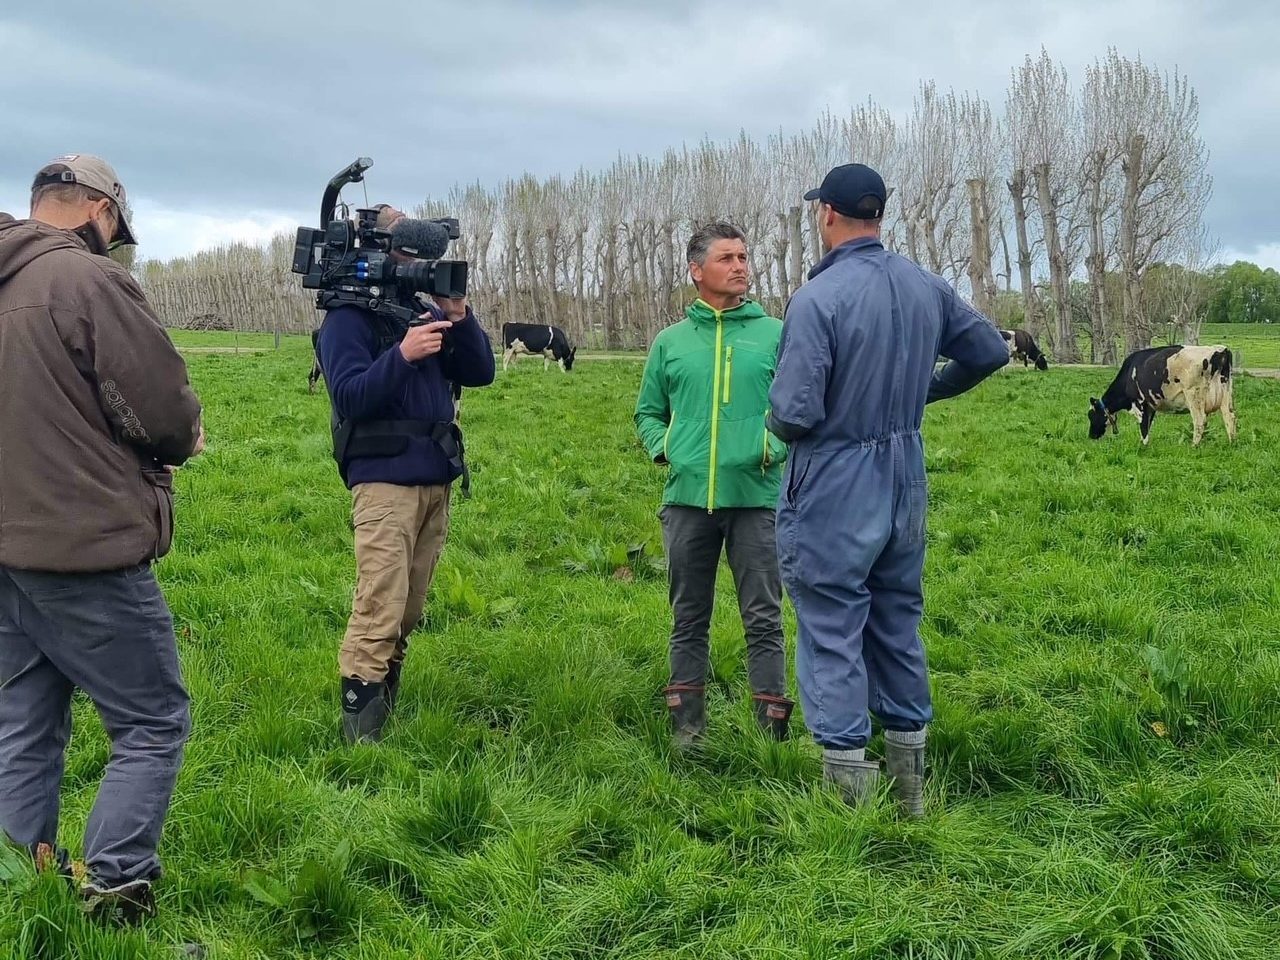 Matt Chisholm Country Living Series filming on-farm